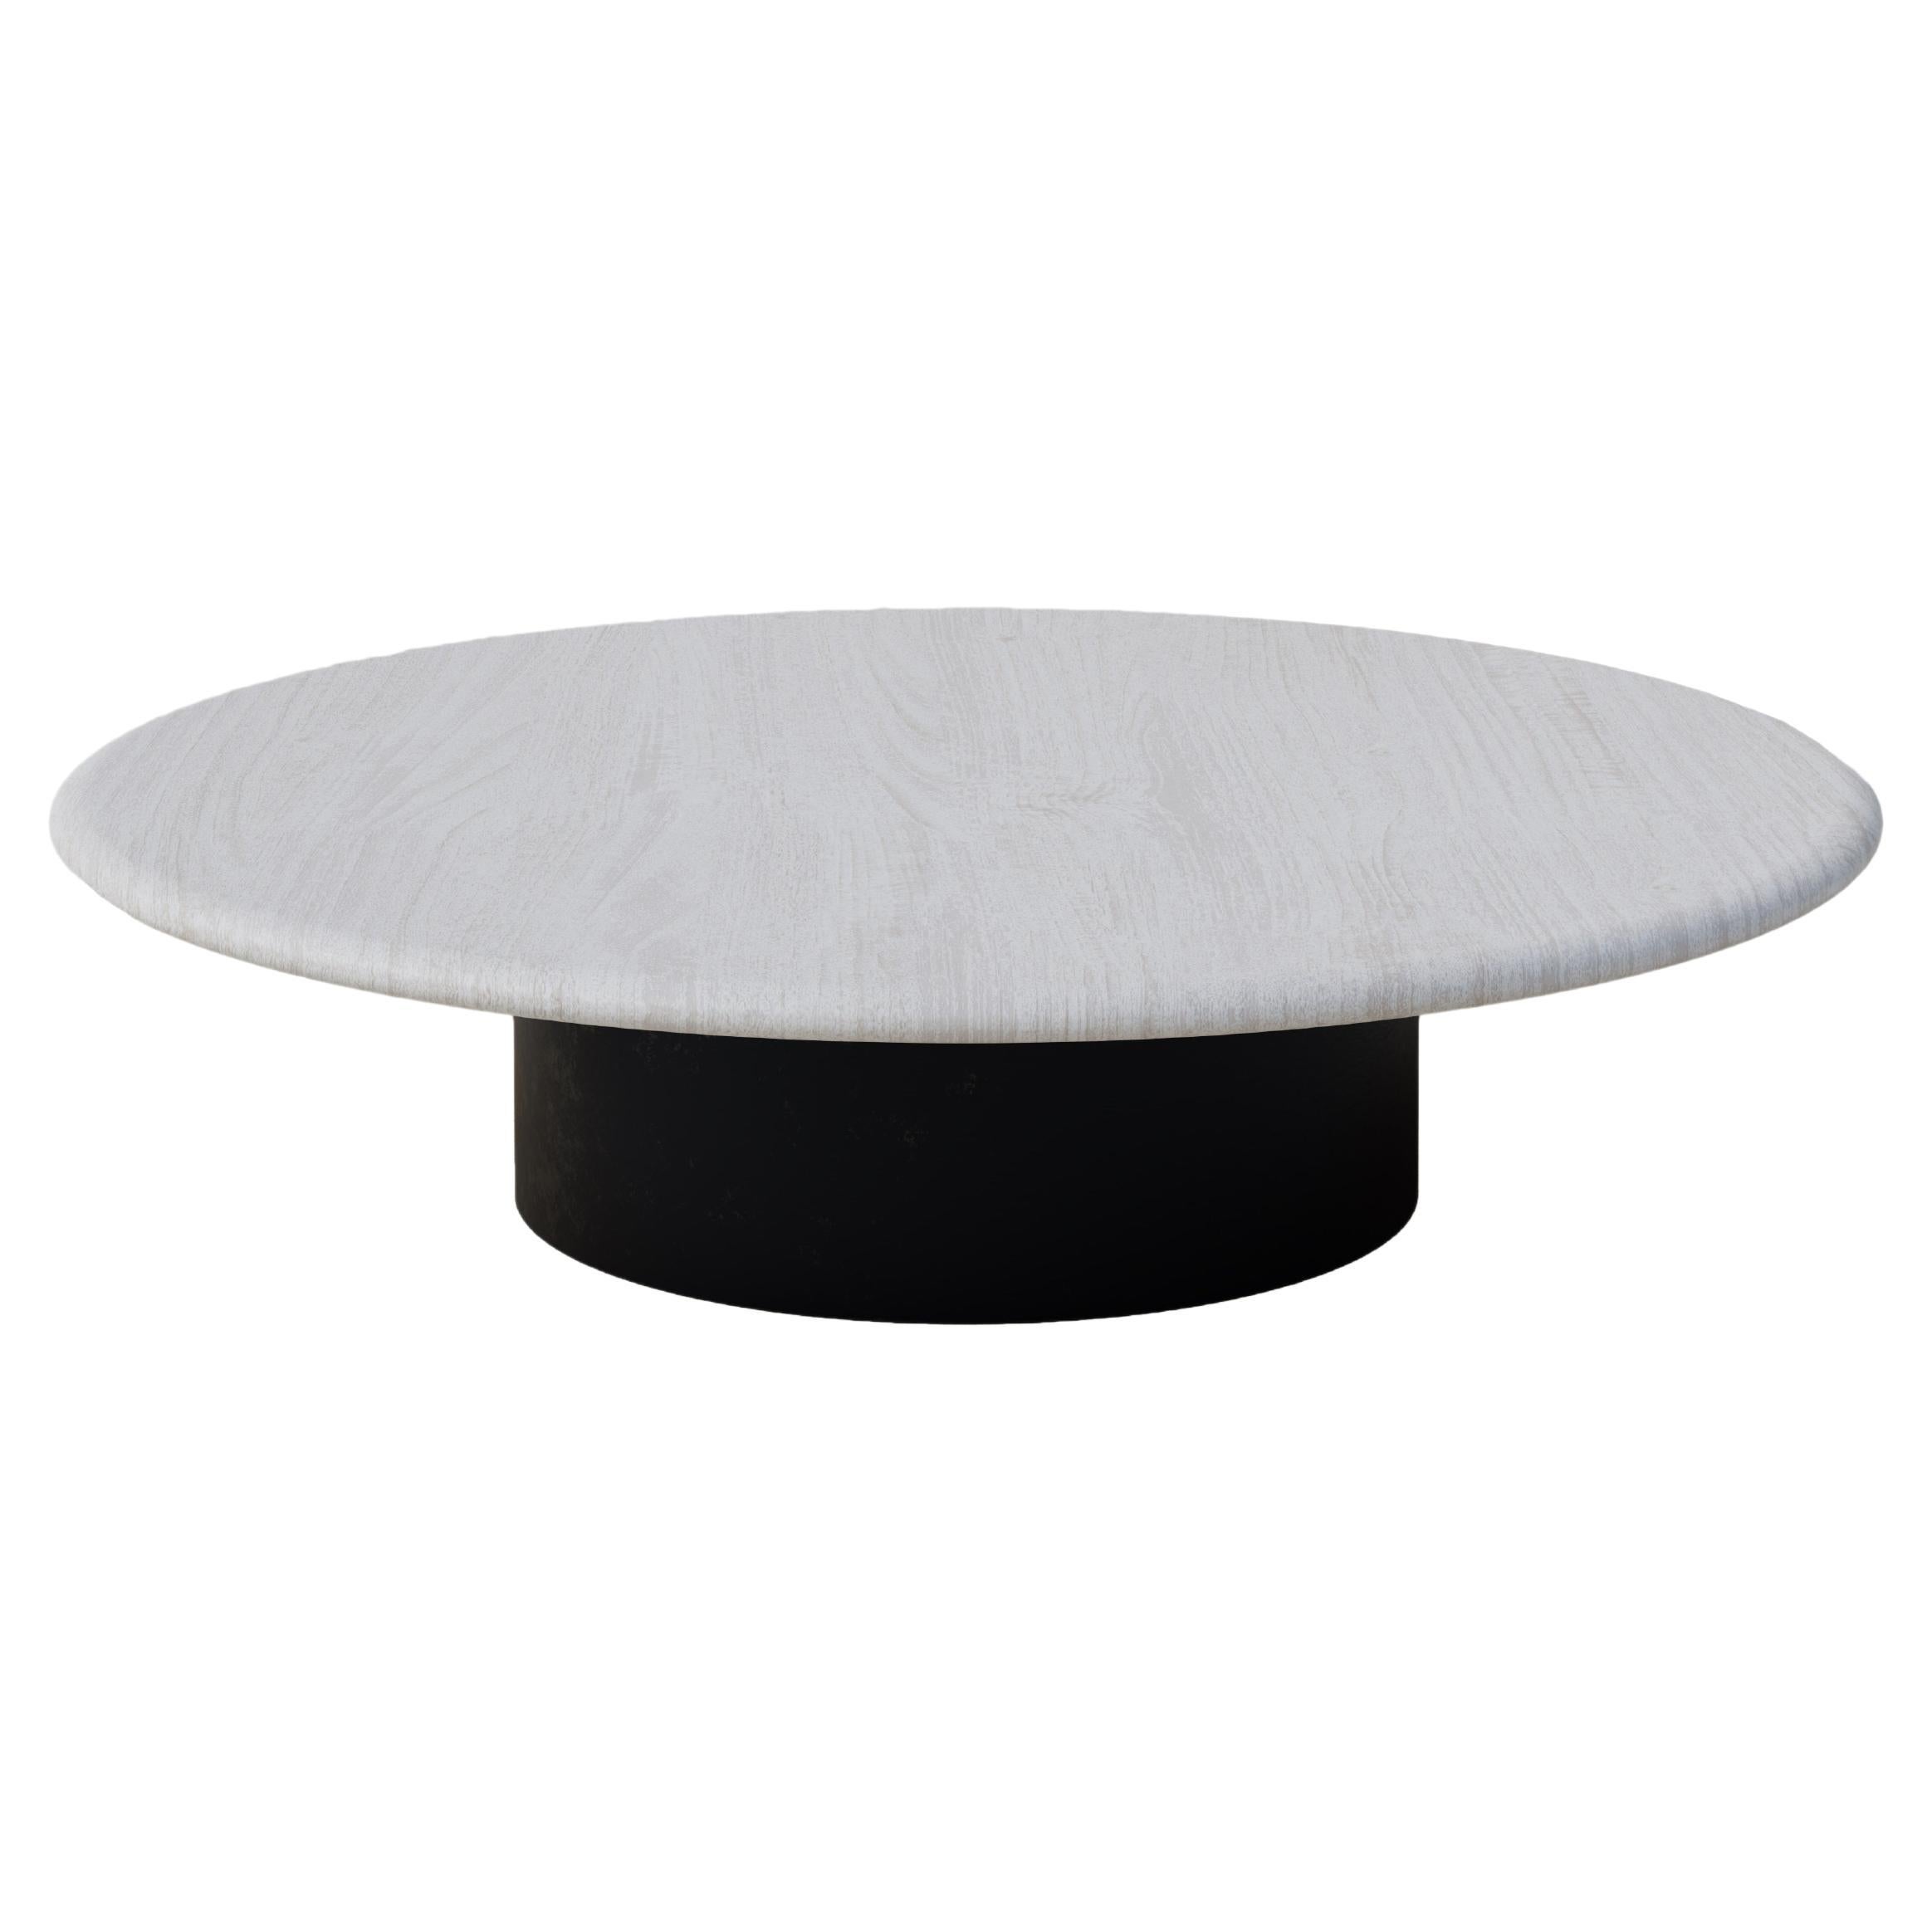 Table basse en forme de goutte d'eau, 1000 cm, chêne blanc / patiné